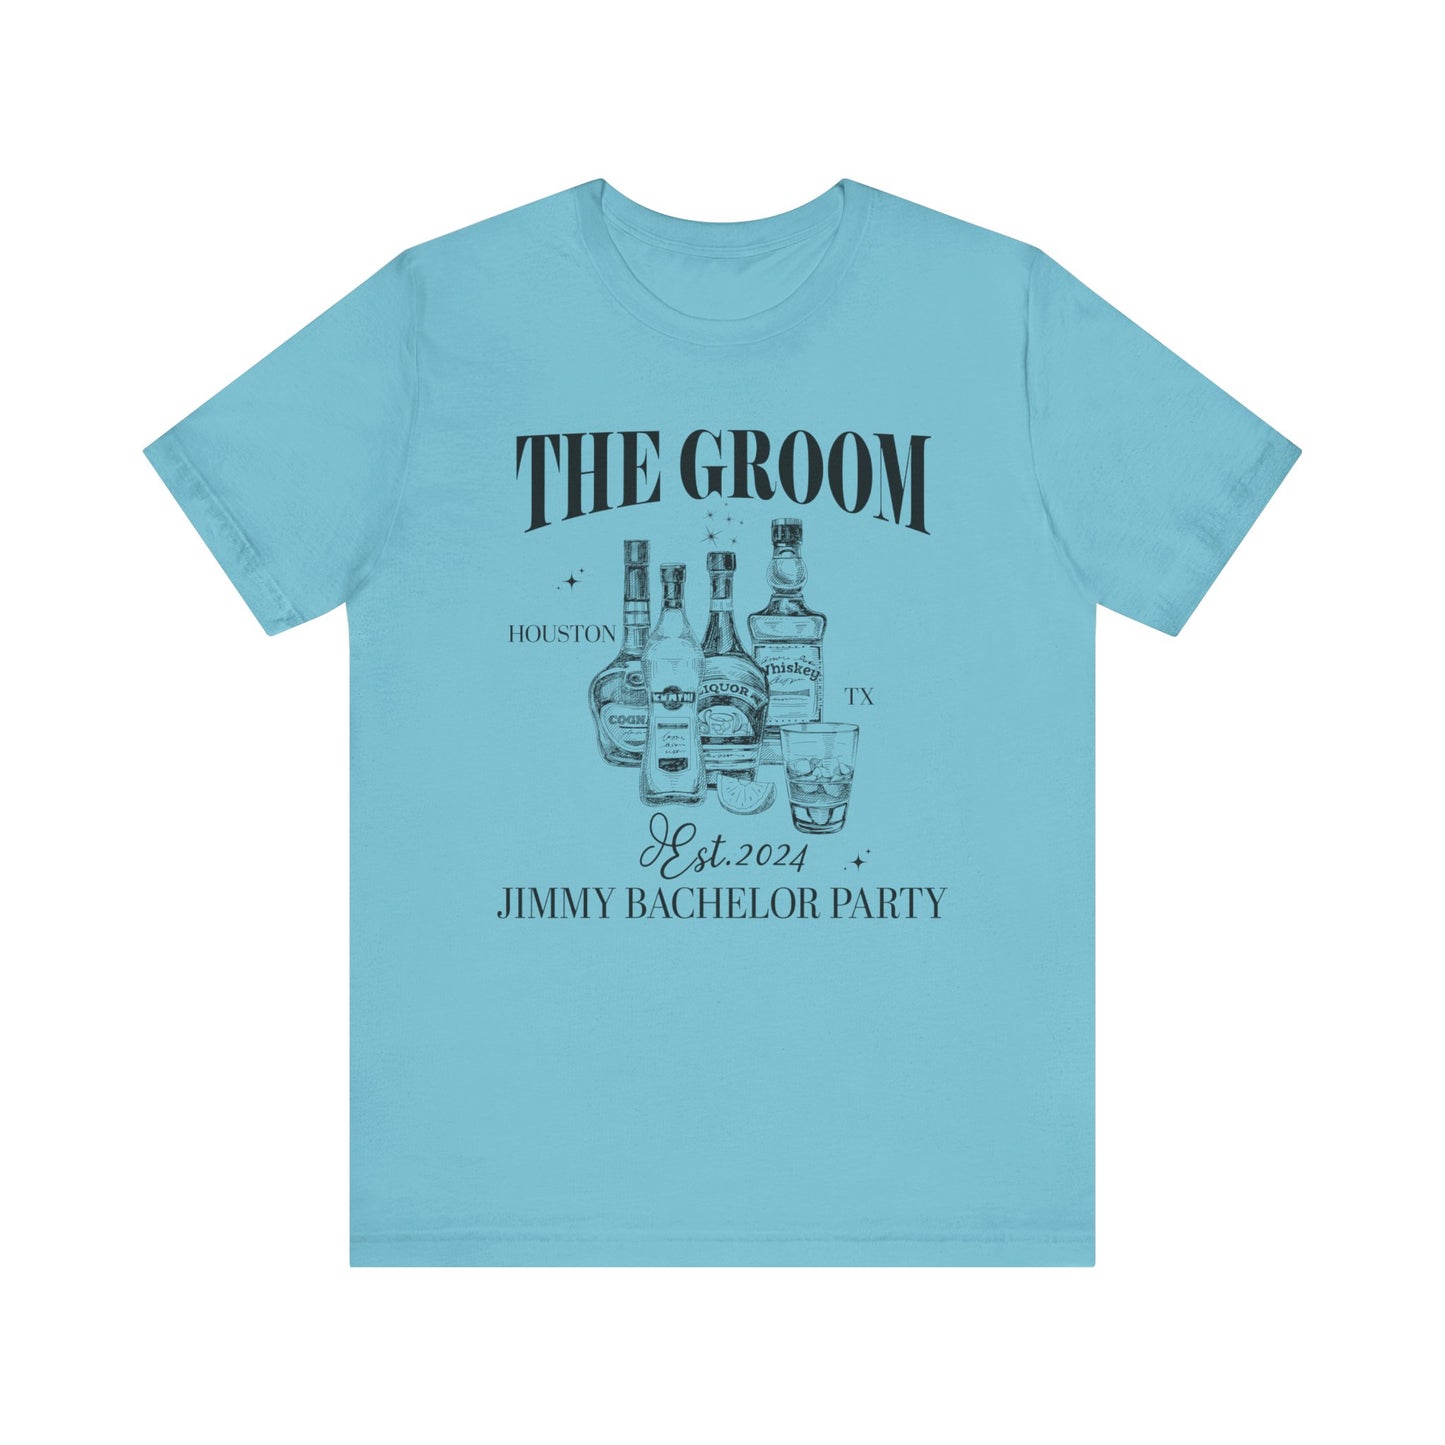 The Groom Bachelor Party Shirts, Groomsmen Shirts, Custom Bachelor Party Gifts, Funny Bachelor Shirts, Group Bachelor Shirts, 1 T1555 UK